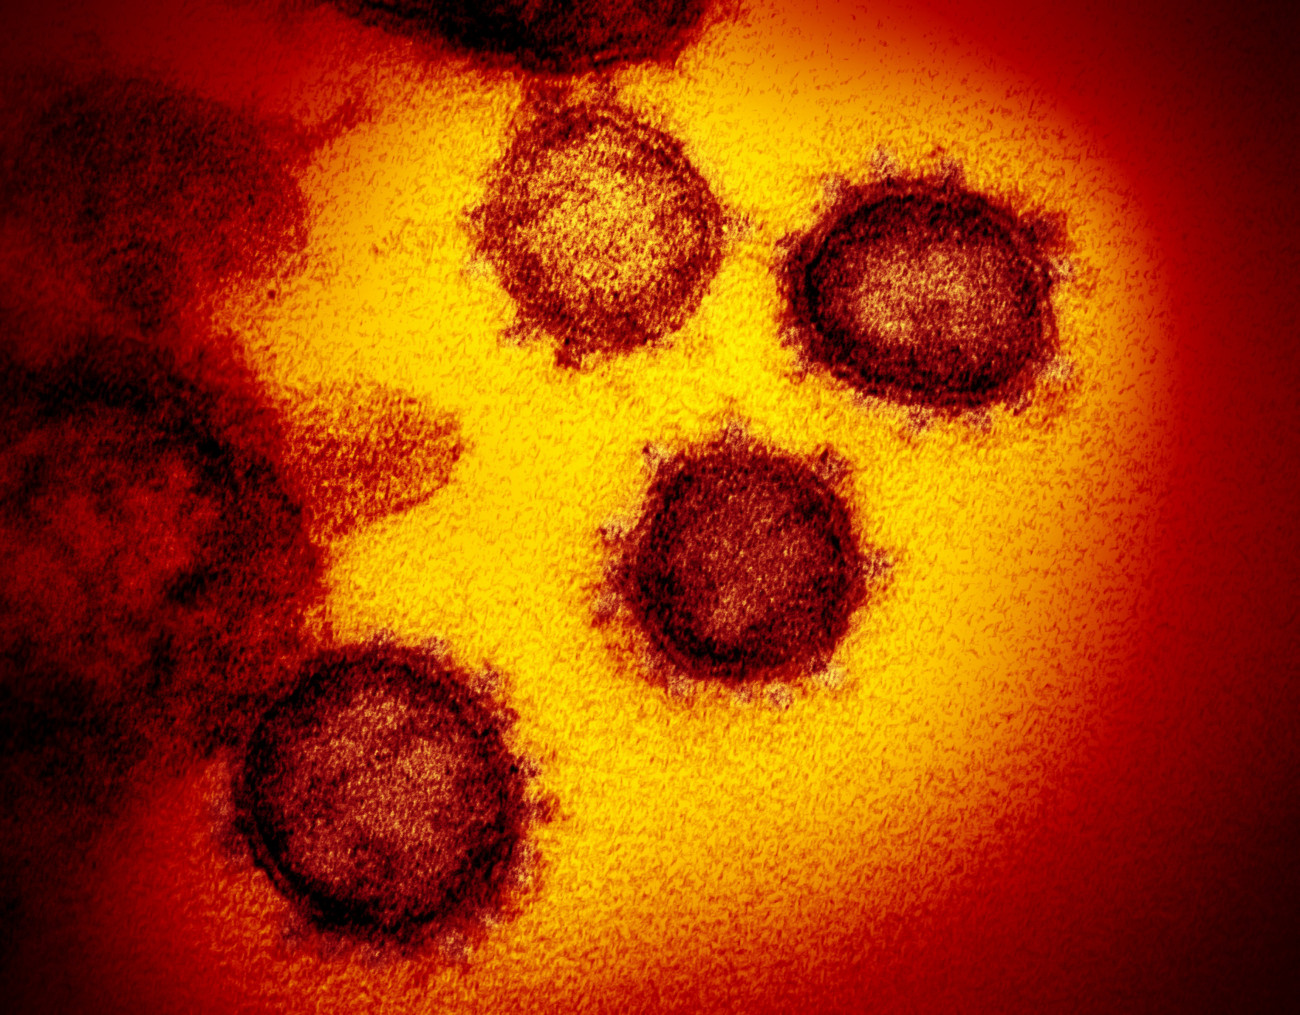 Hamilton, 2020. február 17.
Az amerikai Allergiás és Fertőző Betegségek Országos Intézete (NIAID) által közreadott,  dátumozatlan elektronmikroszkópos kép a SARS-CoV-2 nevű koronavírusról. A 2019-nCoV néven is ismert vírus egy fertőző humán koronavírus, amely a COVID-19-nek nevezett, tüdőgyulladásos megbetegedést okozza. A mintát egy betegtől vették az Egyesült Államokban. A COVID-19-nek elnevezett újfajta koronavírus előidézte betegség halálos áldozatainak száma 1776-ra emelkedett Kínában, a legtöbben a járvány gócpontjában, Hupej tartomány székhelyén, Vuhanban hunytak el. A 2019 december közepe óta tomboló járvány fertőzöttjeinek száma 70 548-ra nőtt.
MTI/AP/NIAID-RML